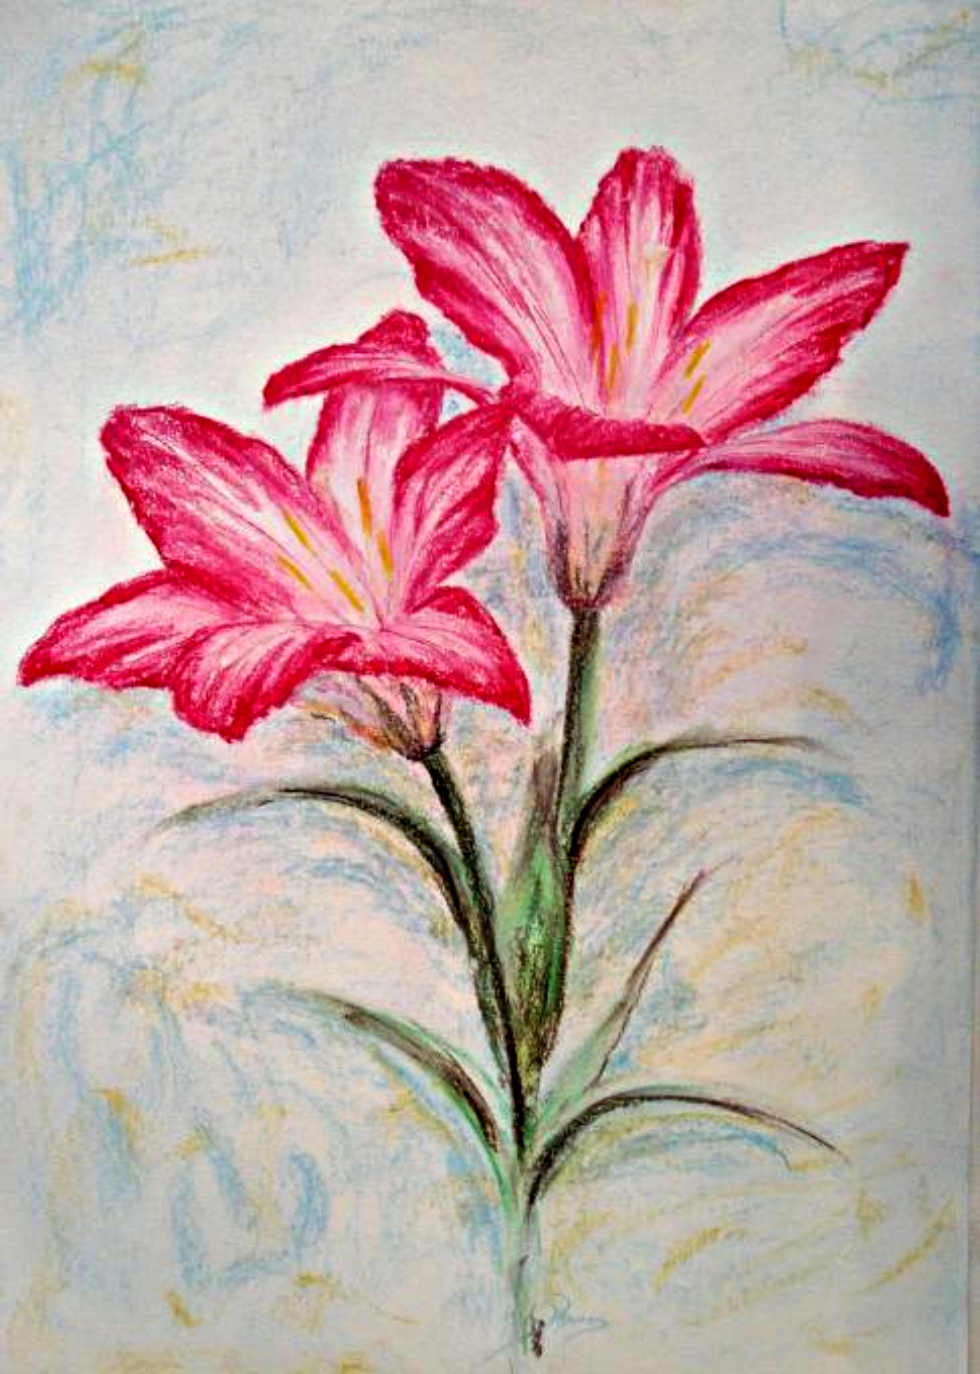 Hoa ly, loa kèn - những loài hoa đẹp nhất được kết hợp thành một bức tranh tuyệt đẹp và hoàn hảo. Hãy thưởng thức và cảm nhận từng chi tiết tinh tế trong hình ảnh này.